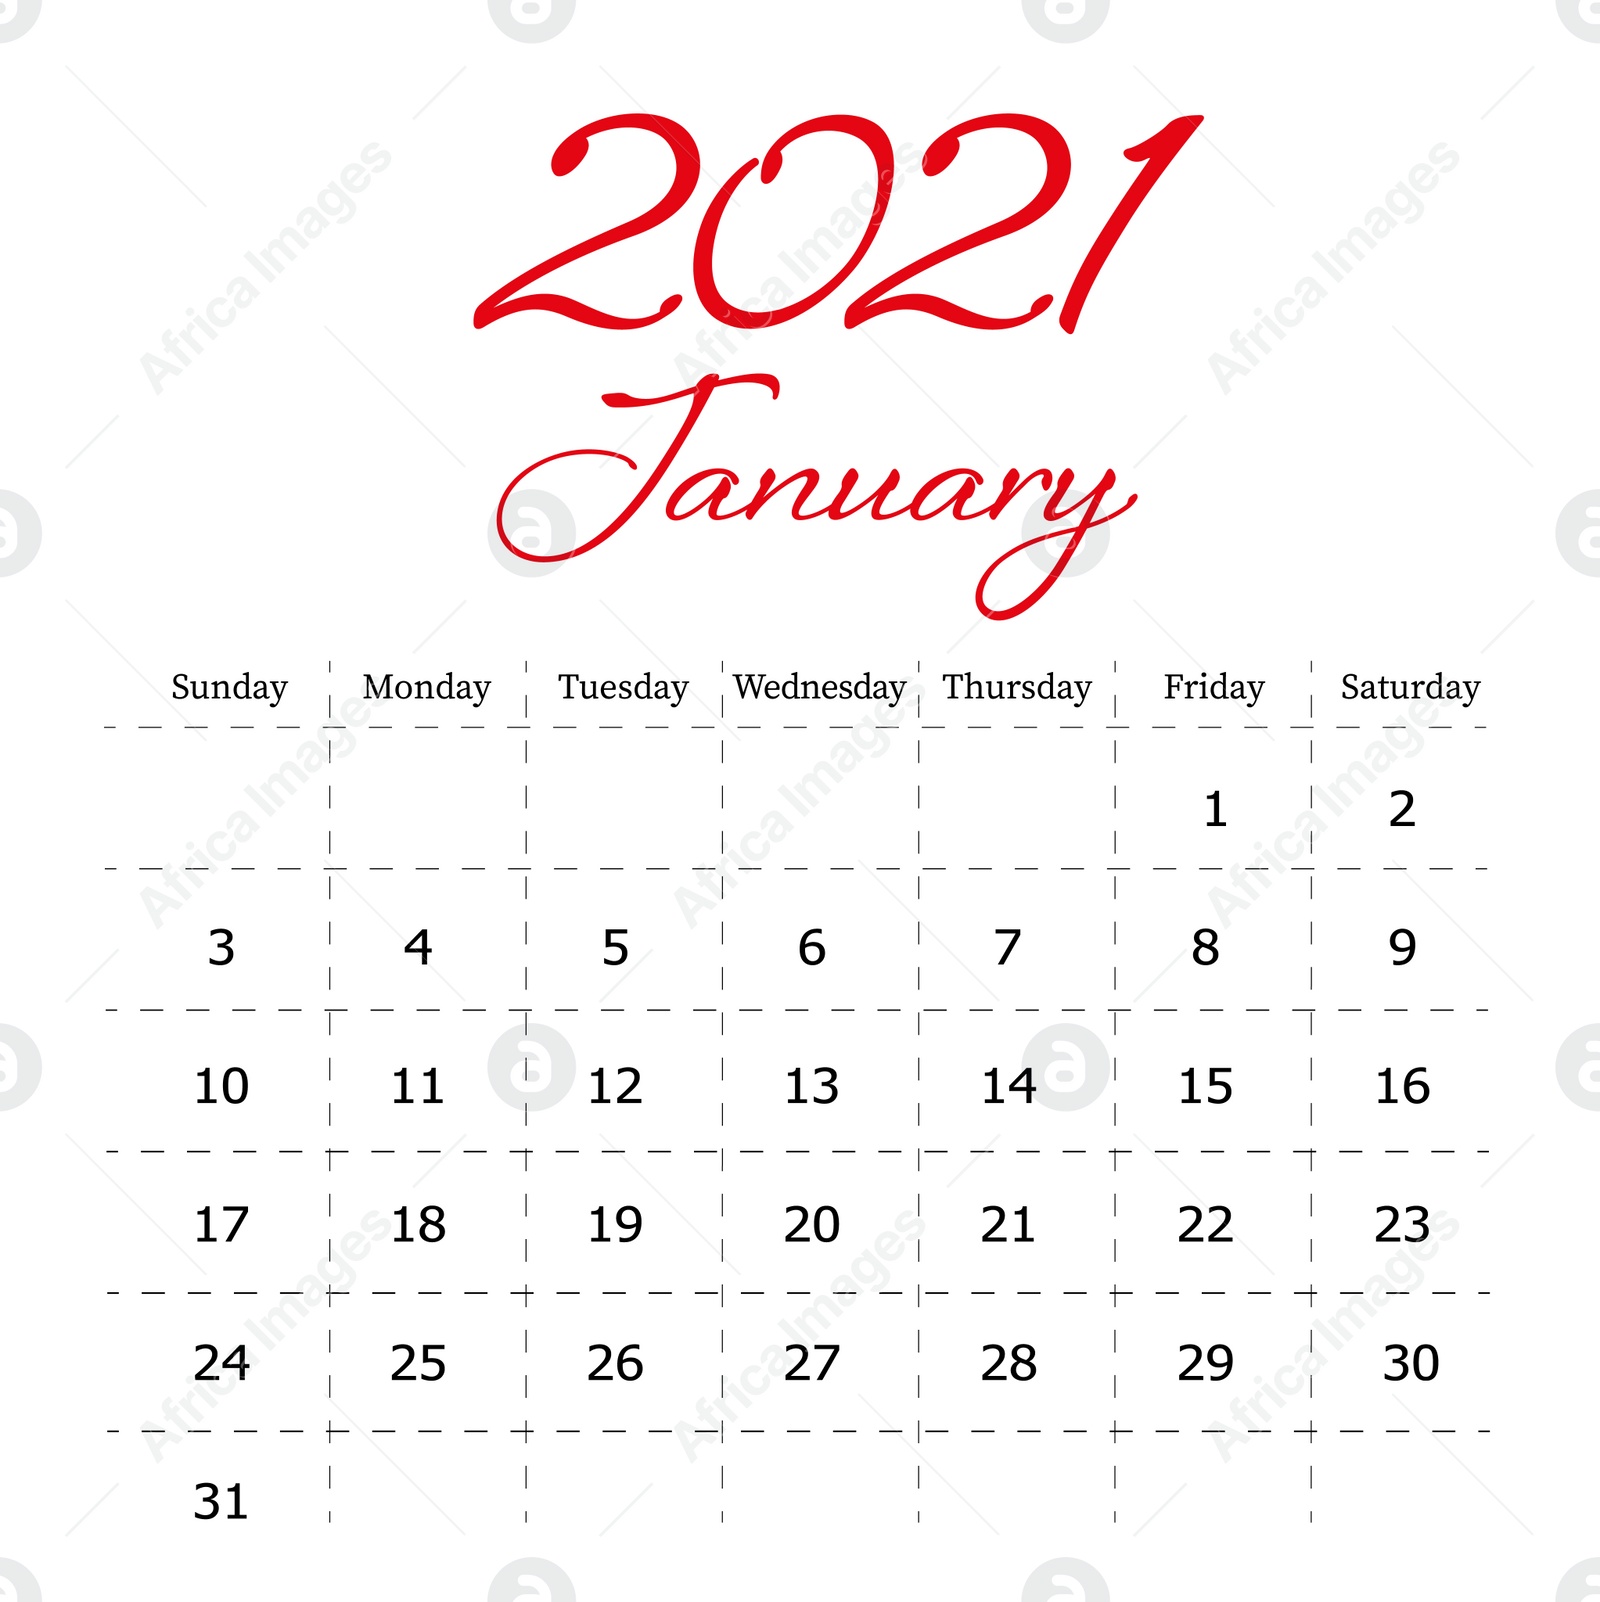 Illustration of 2021 January calendar design on white background